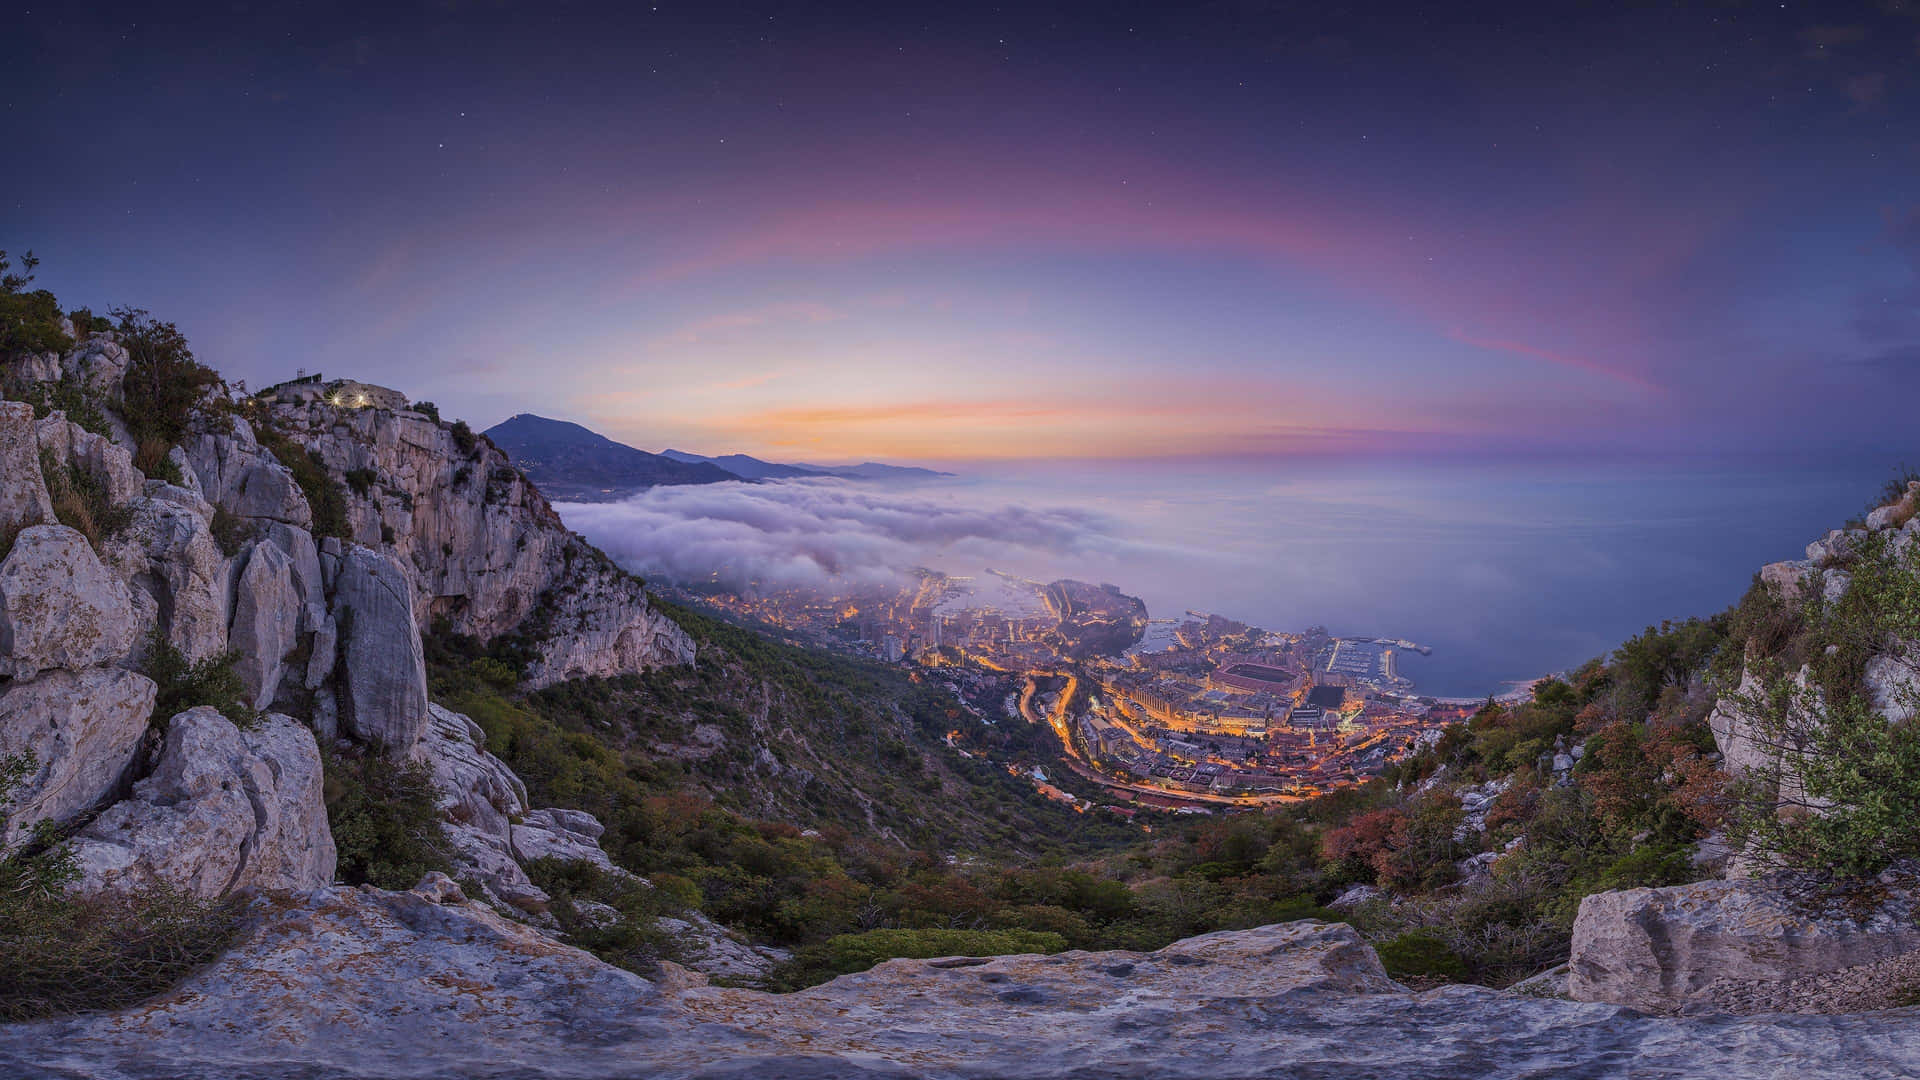 Imagendel Valle De Mónaco.